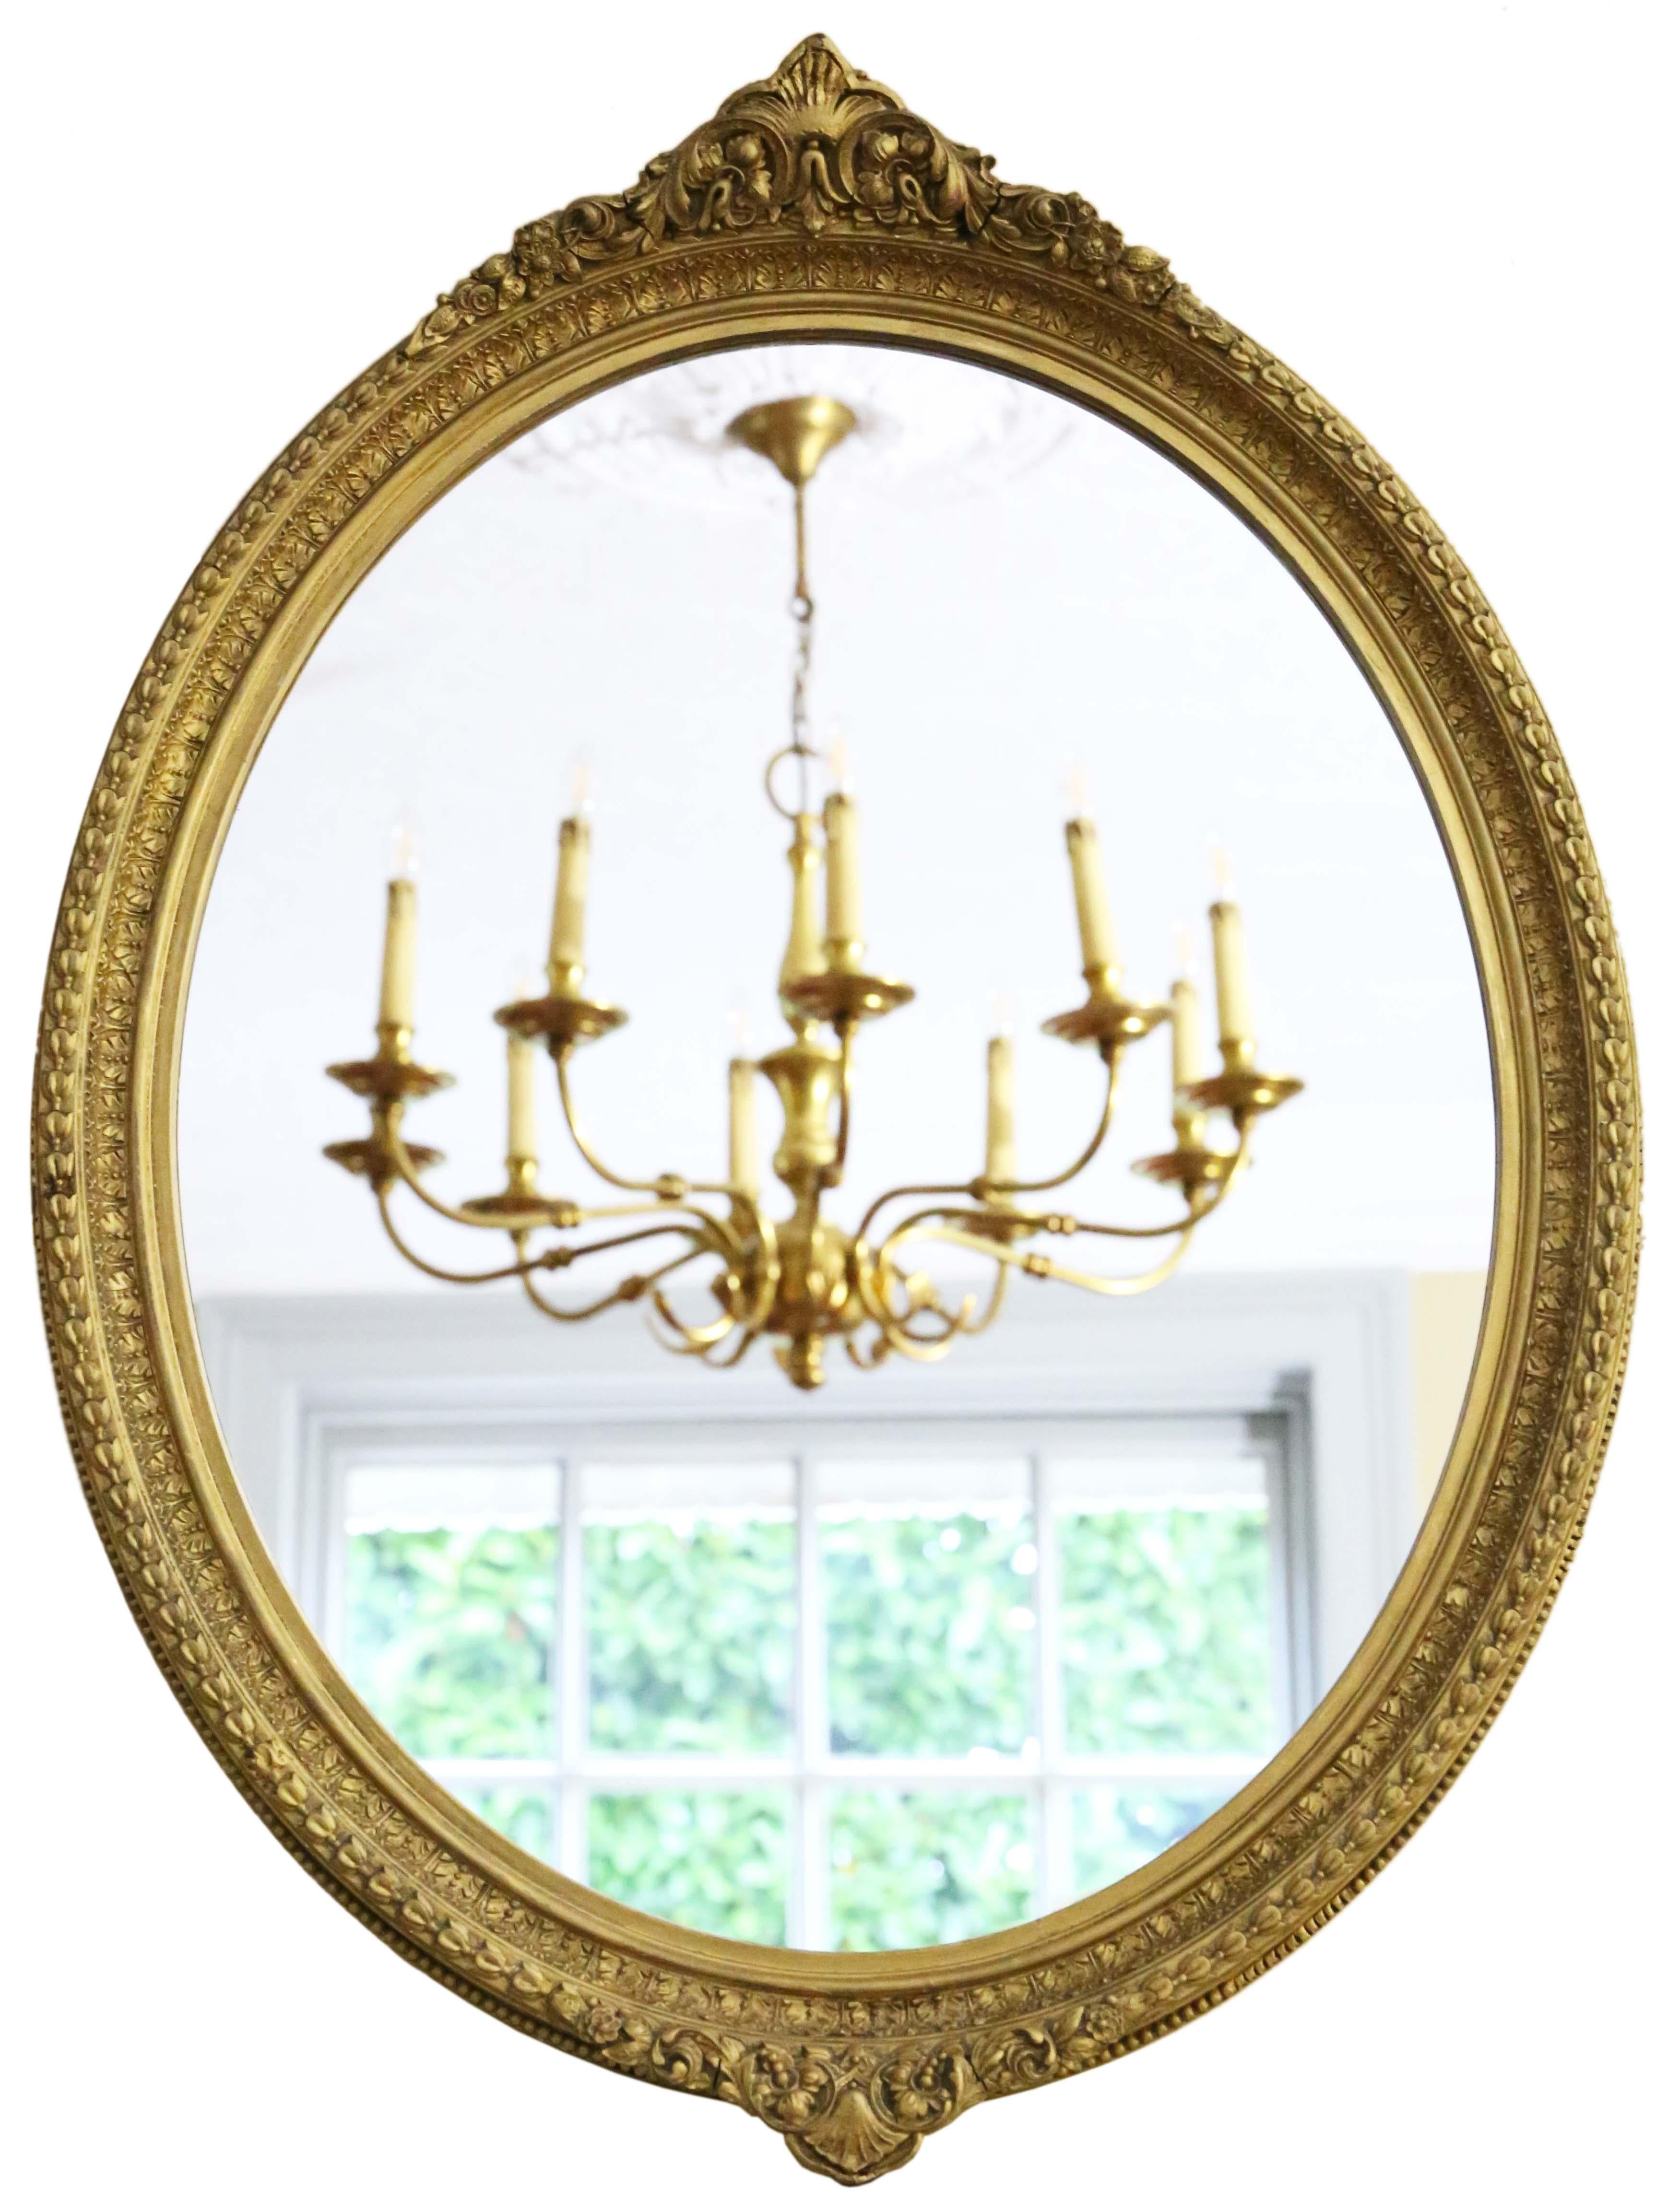 Miroir mural ovale doré de qualité ancienne, 19ème siècle.

Il s'agit d'une découverte rare et impressionnante, qui trouverait sa place au bon endroit. Il n'y a pas de joints lâches ni de ver à bois.

Le verre de remplacement du miroir est en très